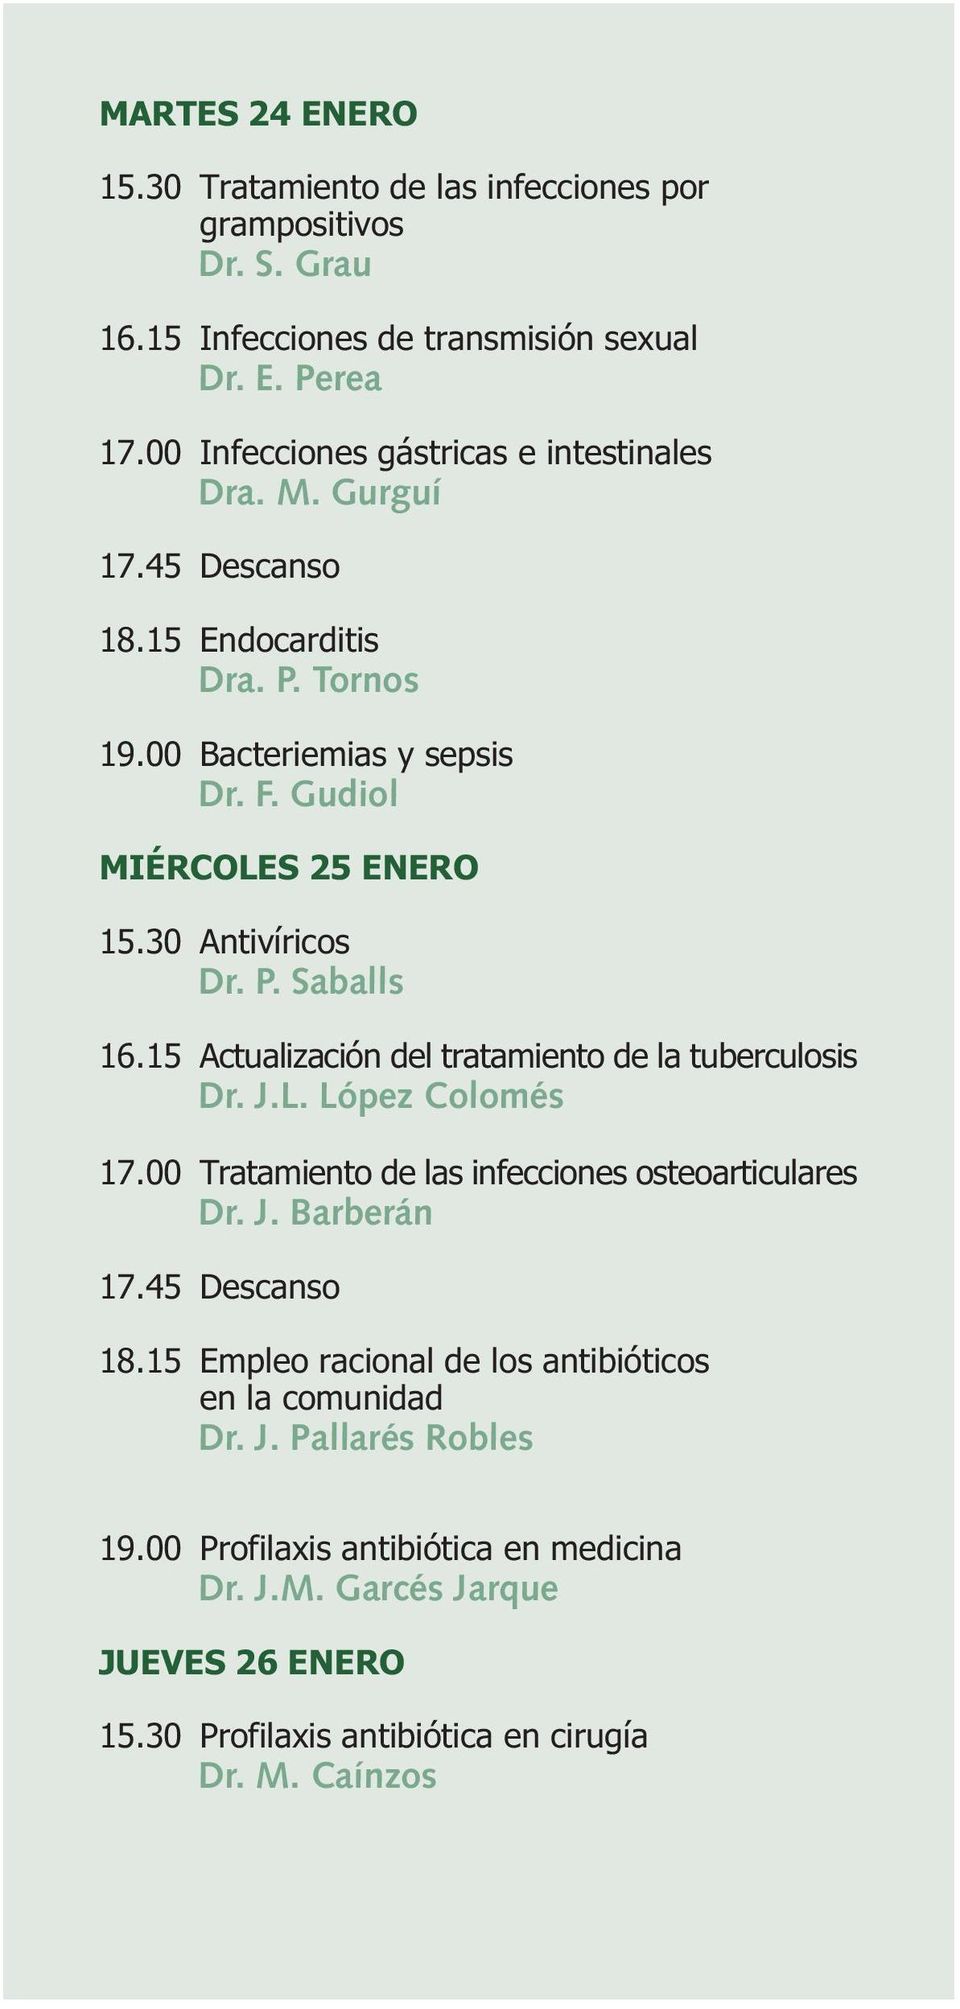 30 Antivíricos Dr. P. Saballs 16.15 Actualización del tratamiento de la tuberculosis Dr. J.L. López Colomés 17.00 Tratamiento de las infecciones osteoarticulares Dr. J. Barberán 17.